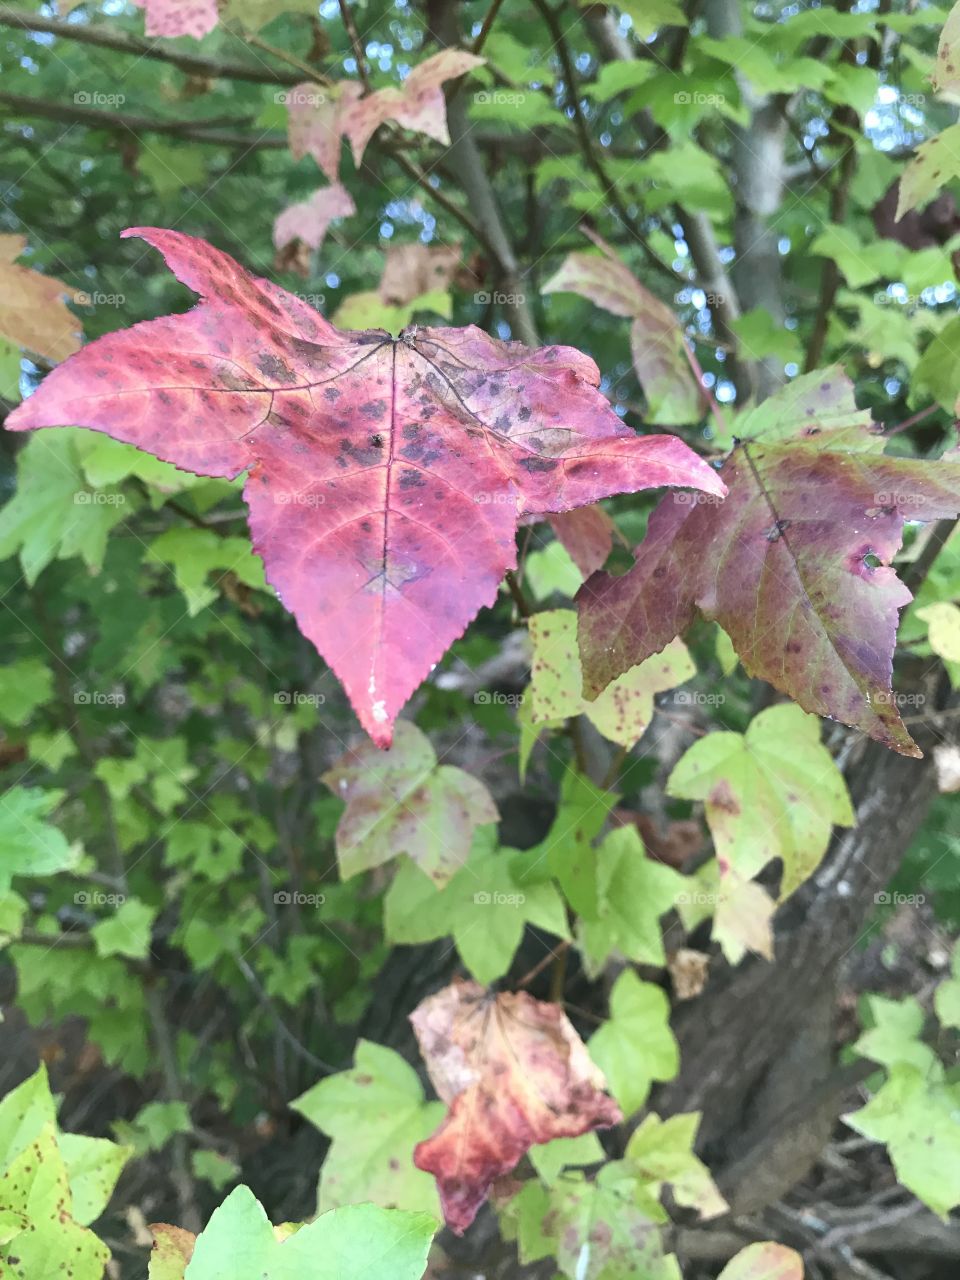 Fall foliage 
